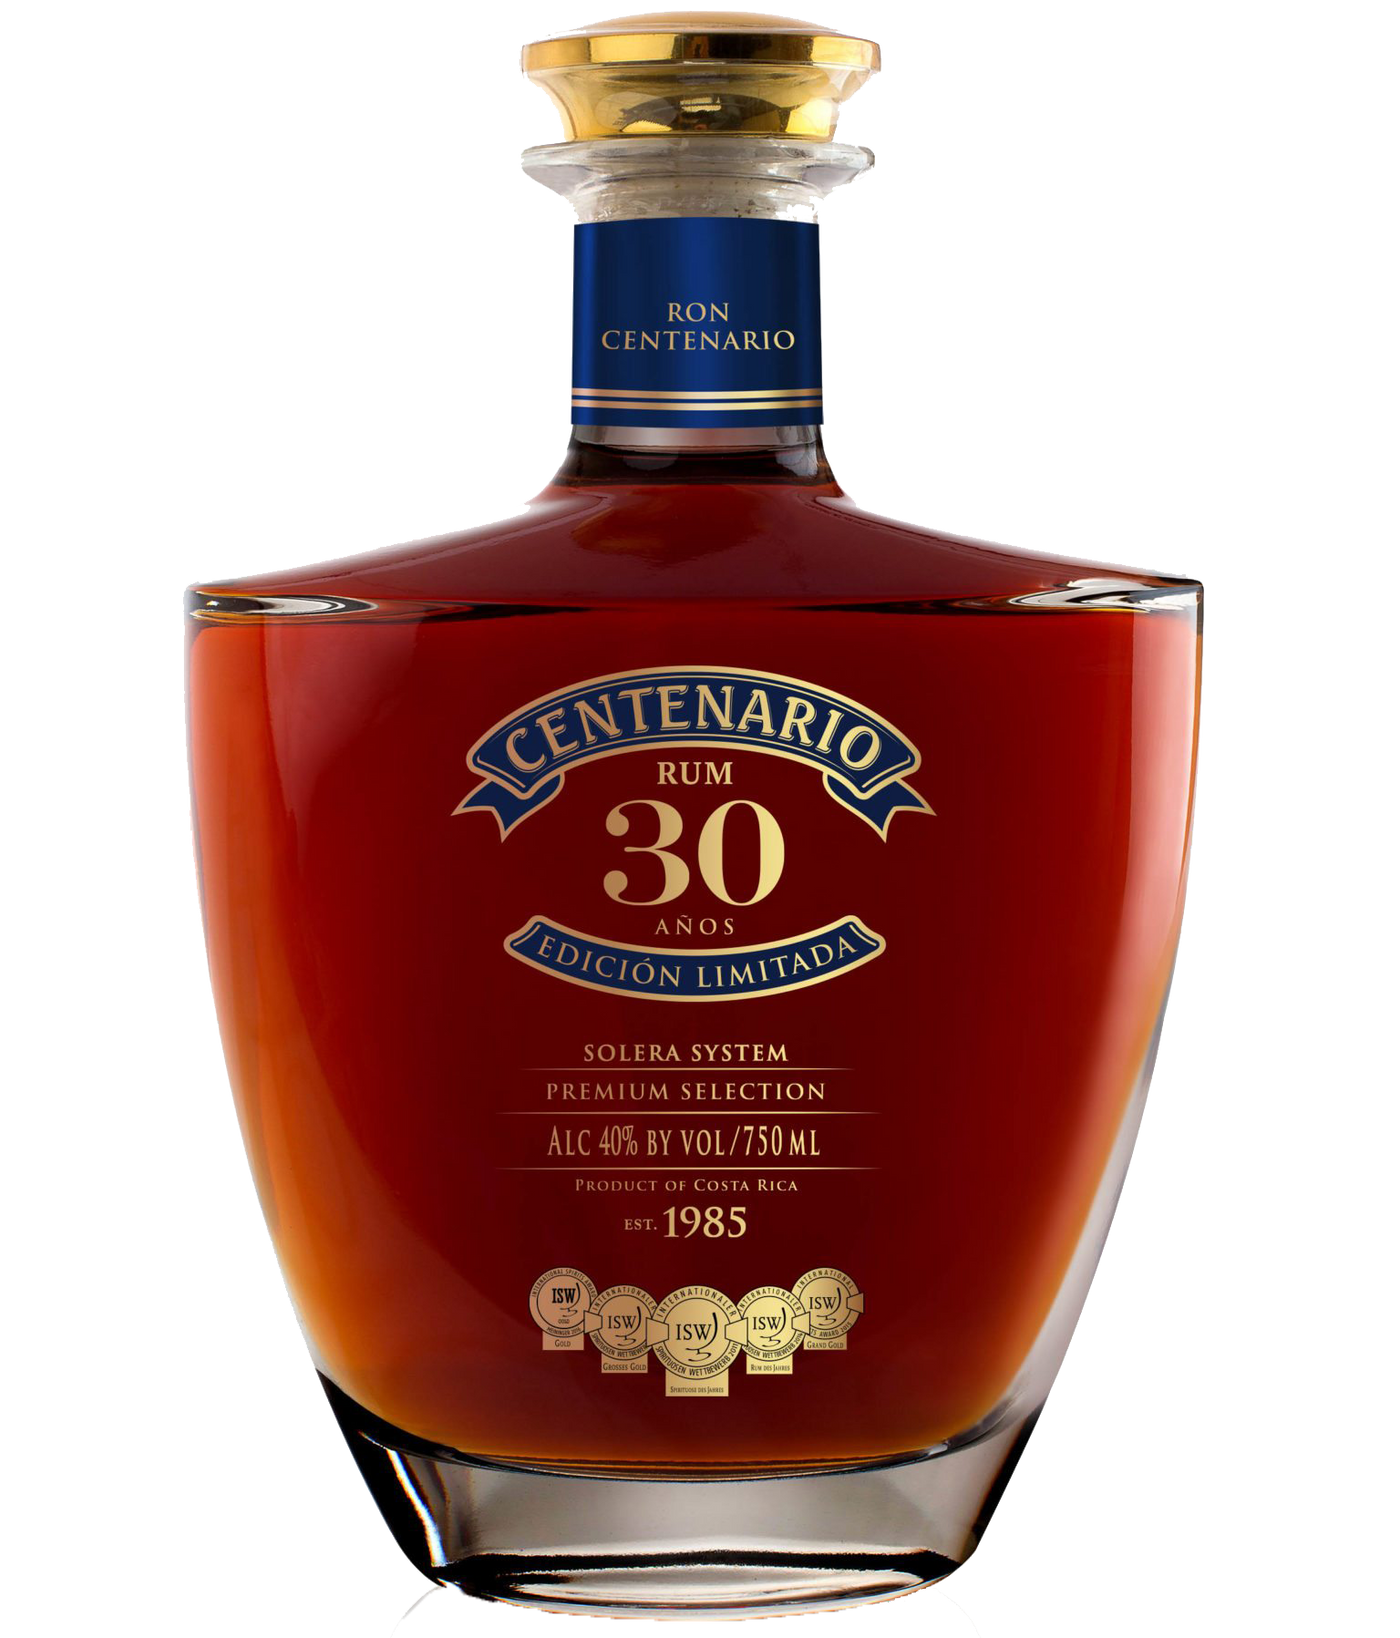 BUY] Ron Centenario 30 Edicion Limitada Rum at